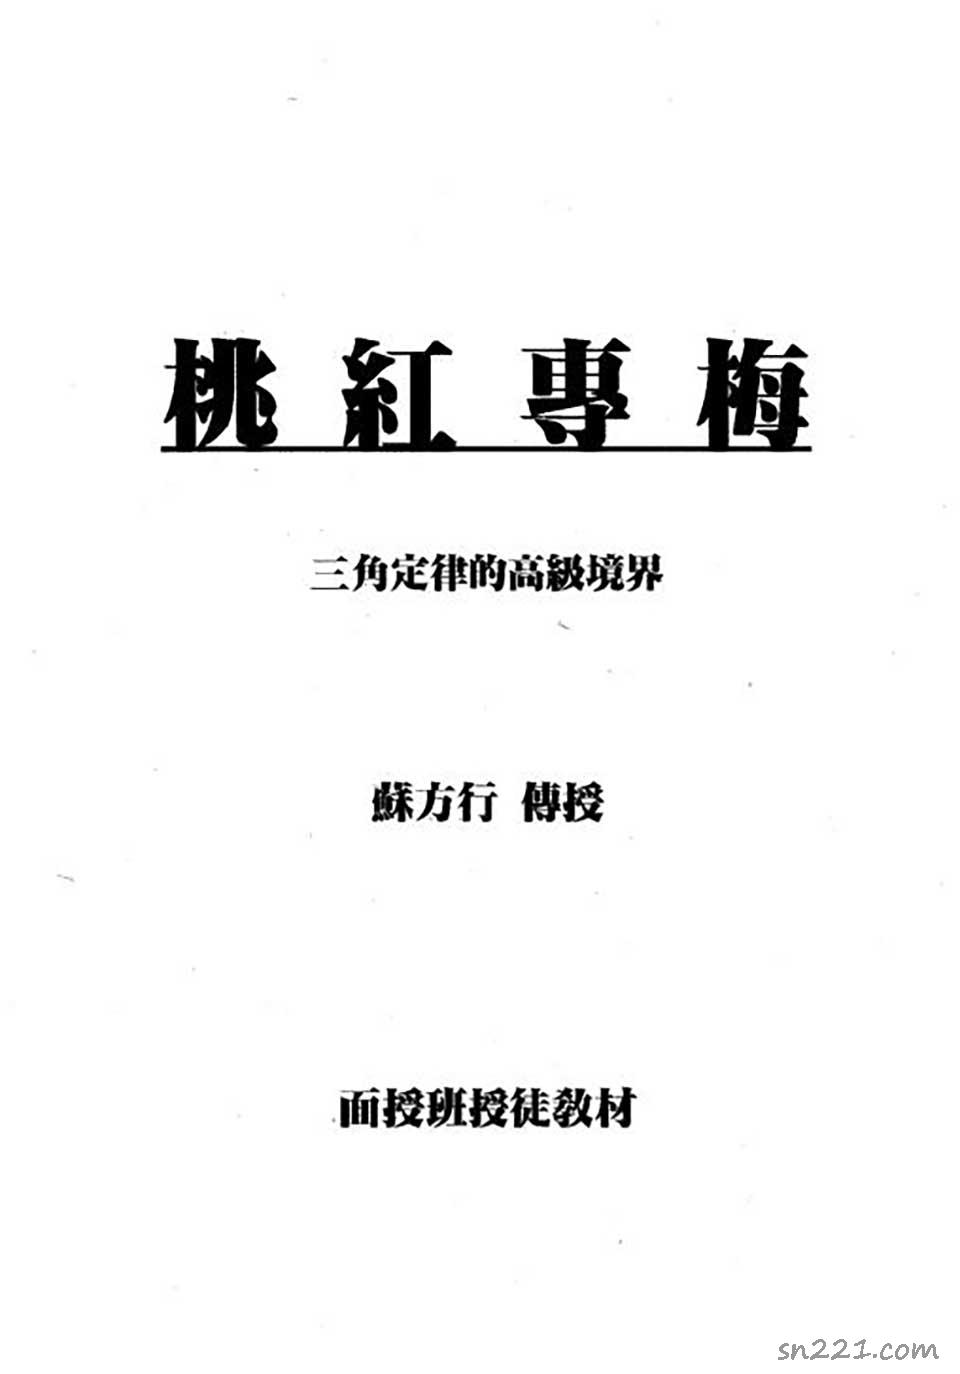 蘇方行-桃紅專梅專用預測整理版18頁.pdf